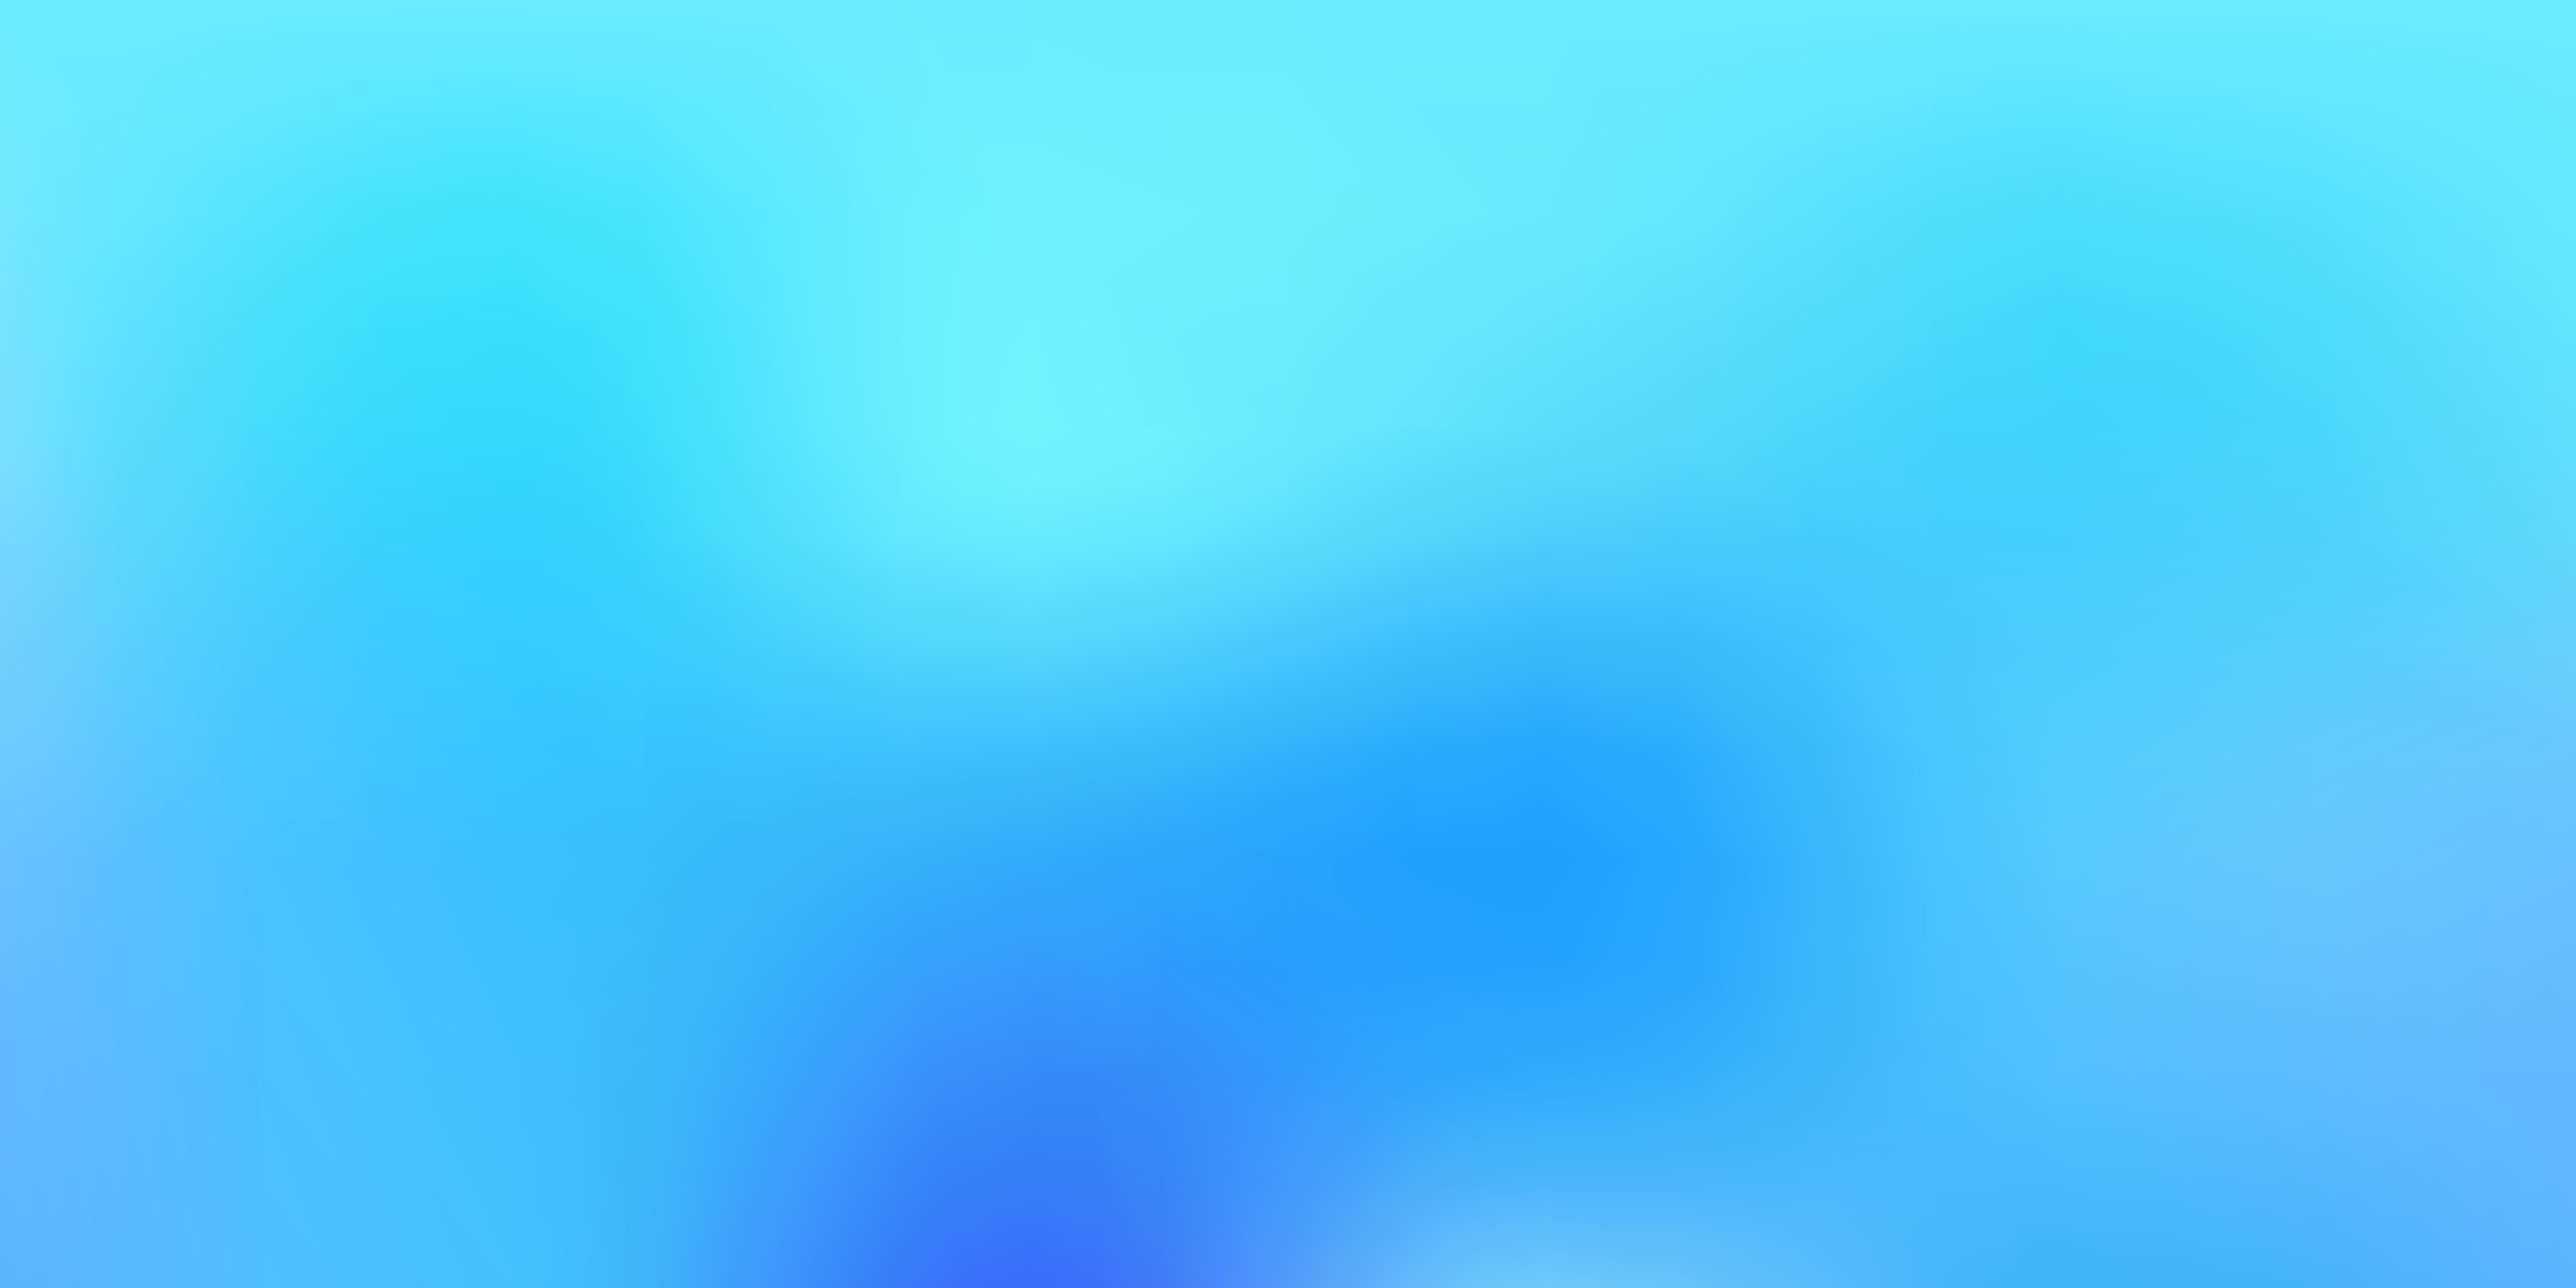 Light BLUE vector blur background 2669326 Vector Art at Vecteezy